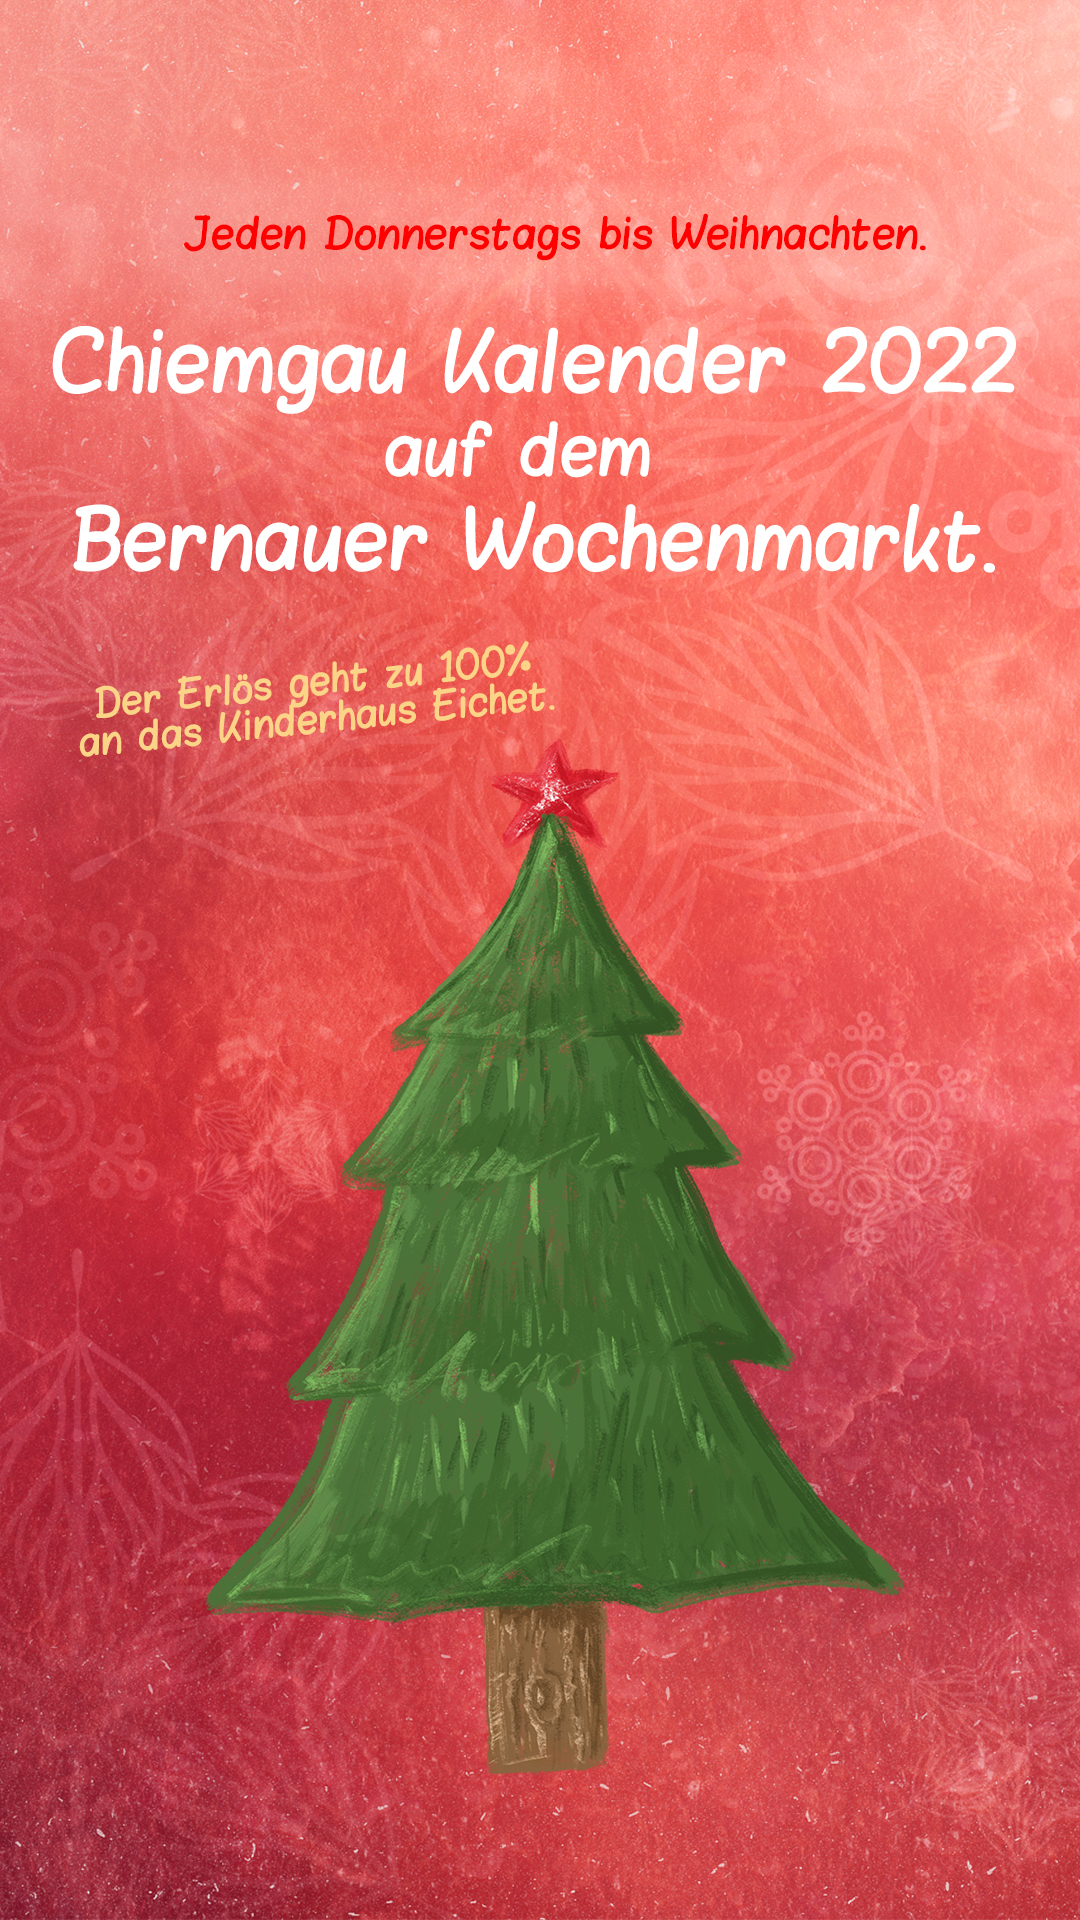 Chiemgau Kalender 2022 auf dem Wochenmarkt in Bernau 2